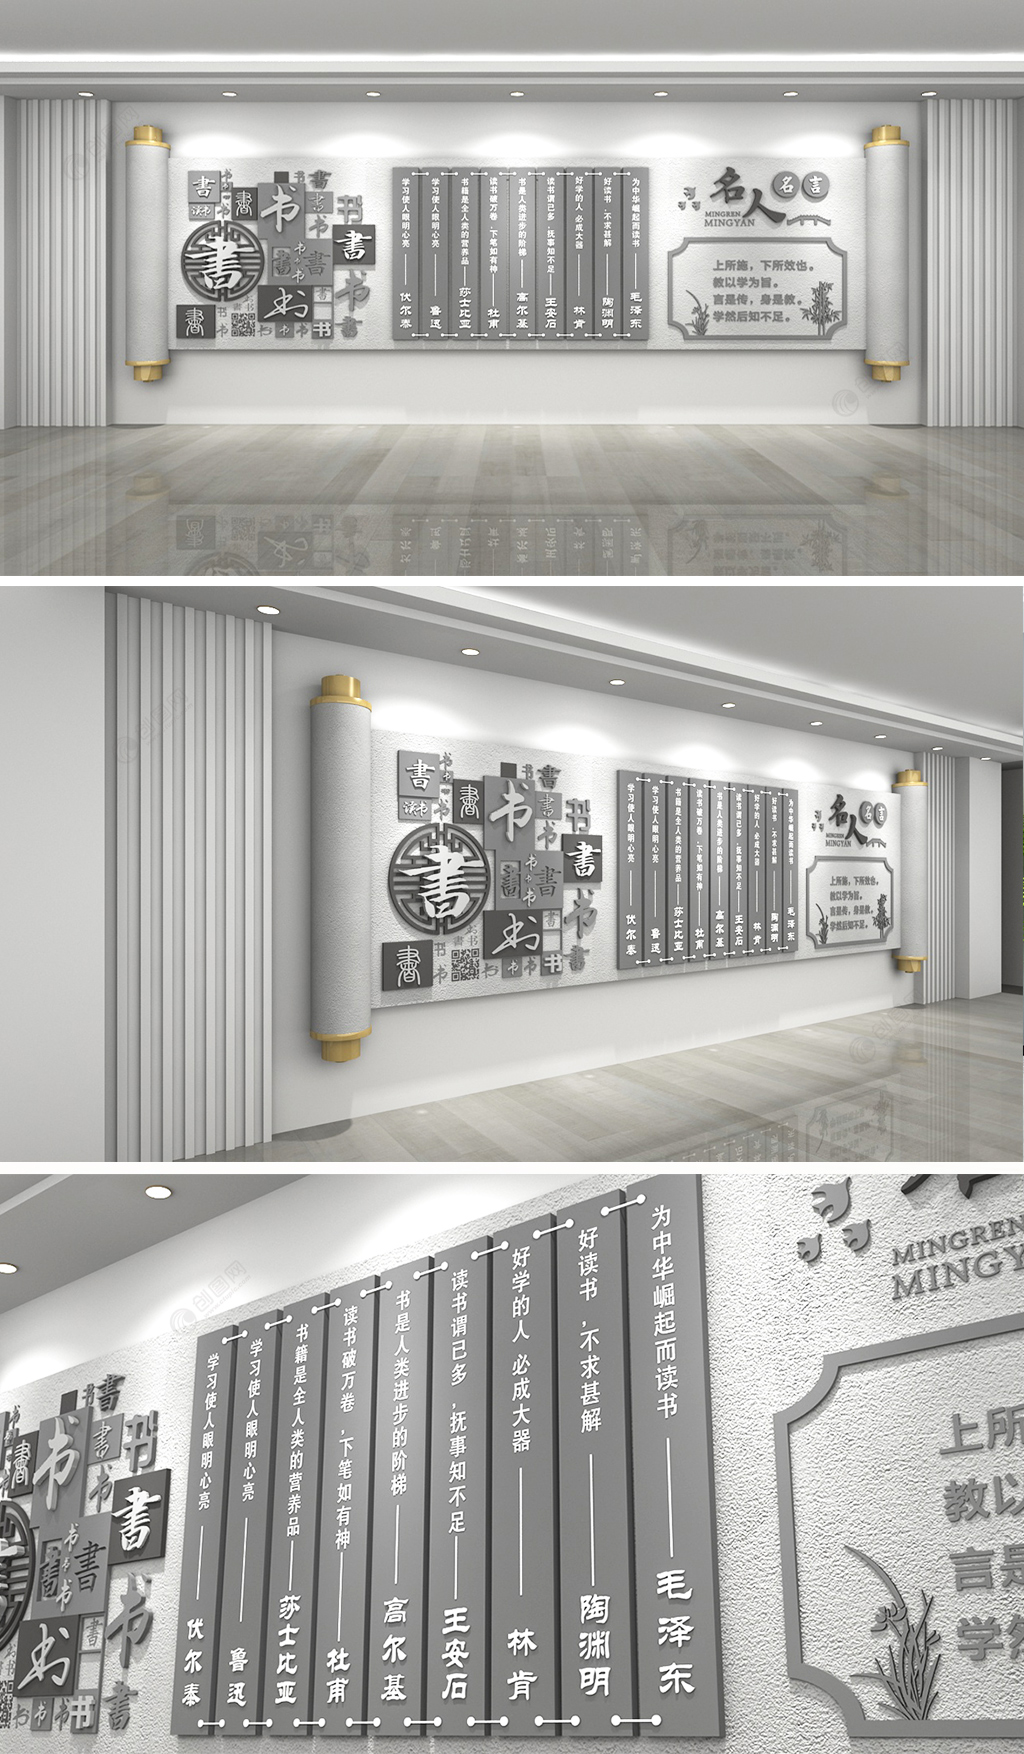 石纹卷轴校园名人名言文化墙设计